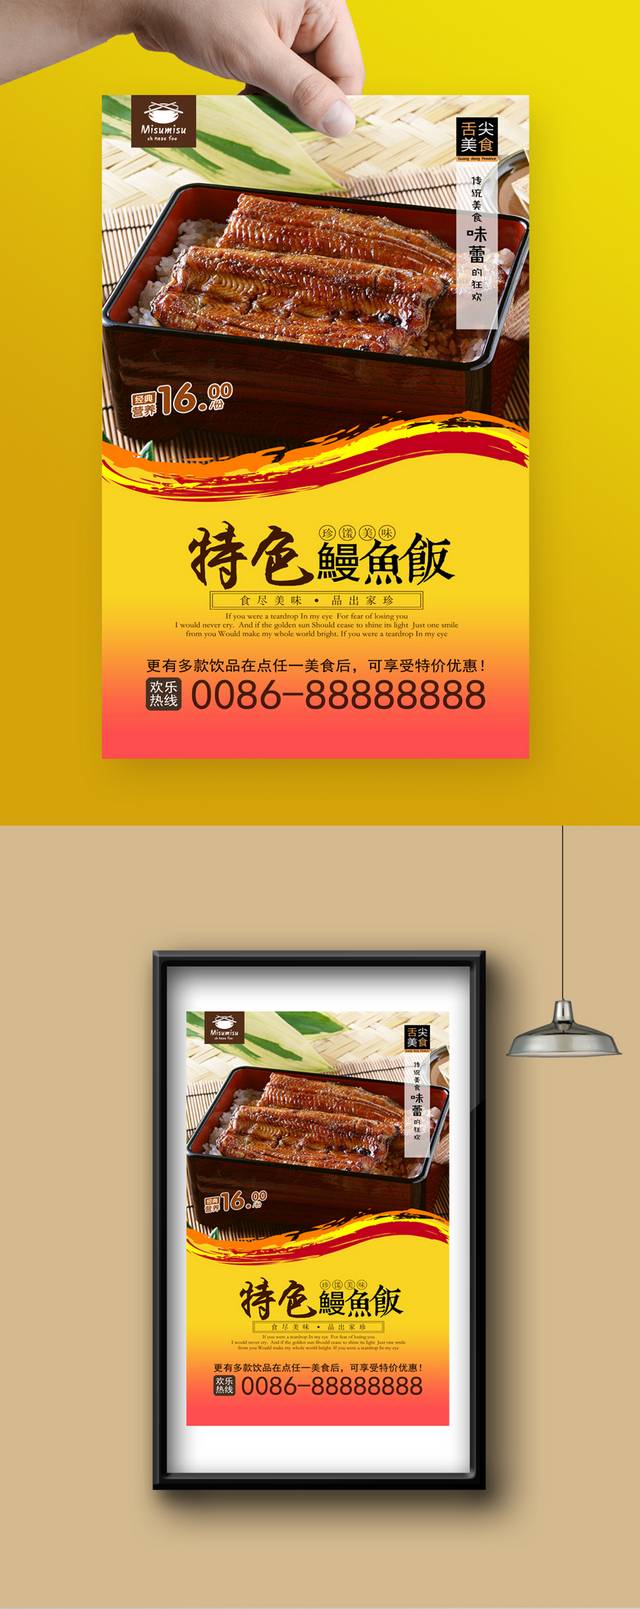 高清鳗鱼饭宣传海报设计模板